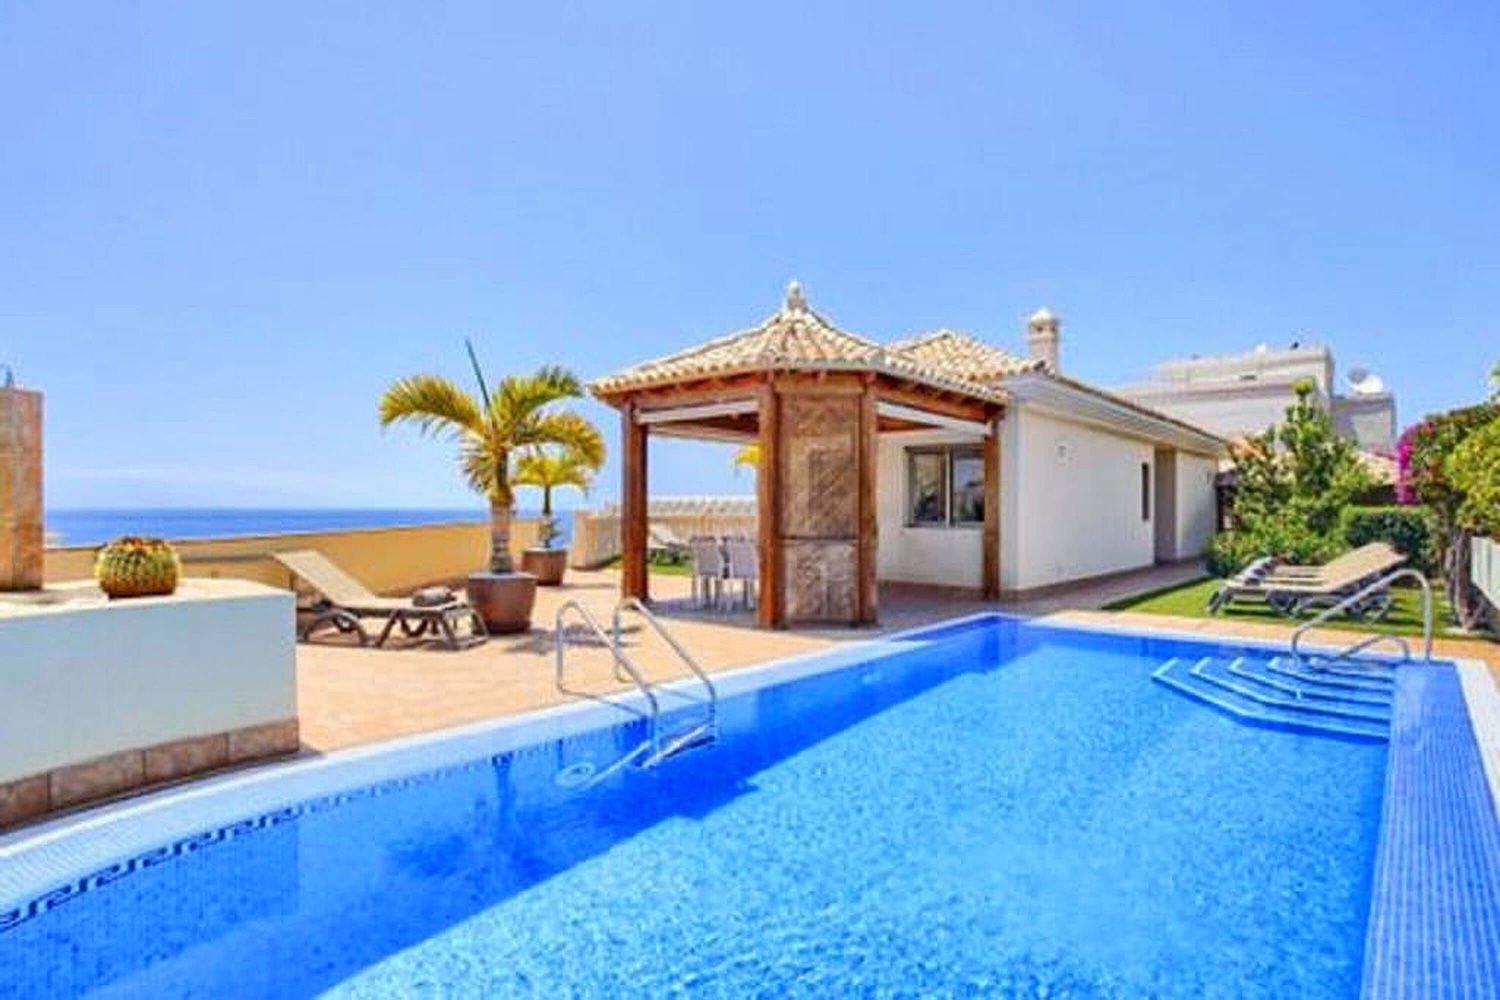 Fristående, modern, rymlig och ljus villa. Den ligger i Puerto de Santiago och har magnifik utsikt.